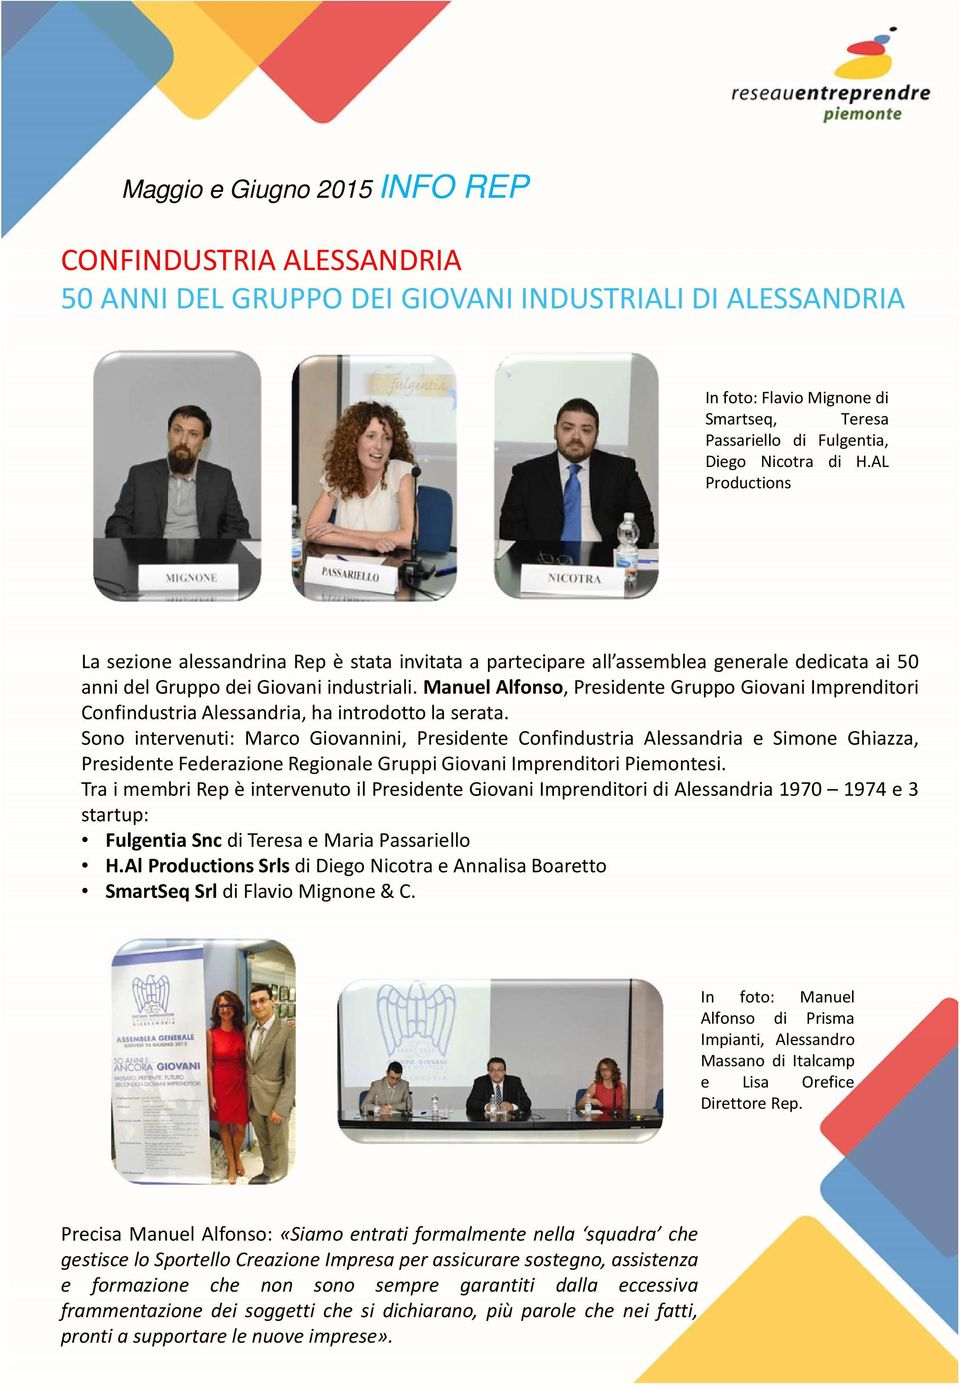 Manuel Alfonso, Presidente Gruppo Giovani Imprenditori Confindustria Alessandria, ha introdotto la serata.